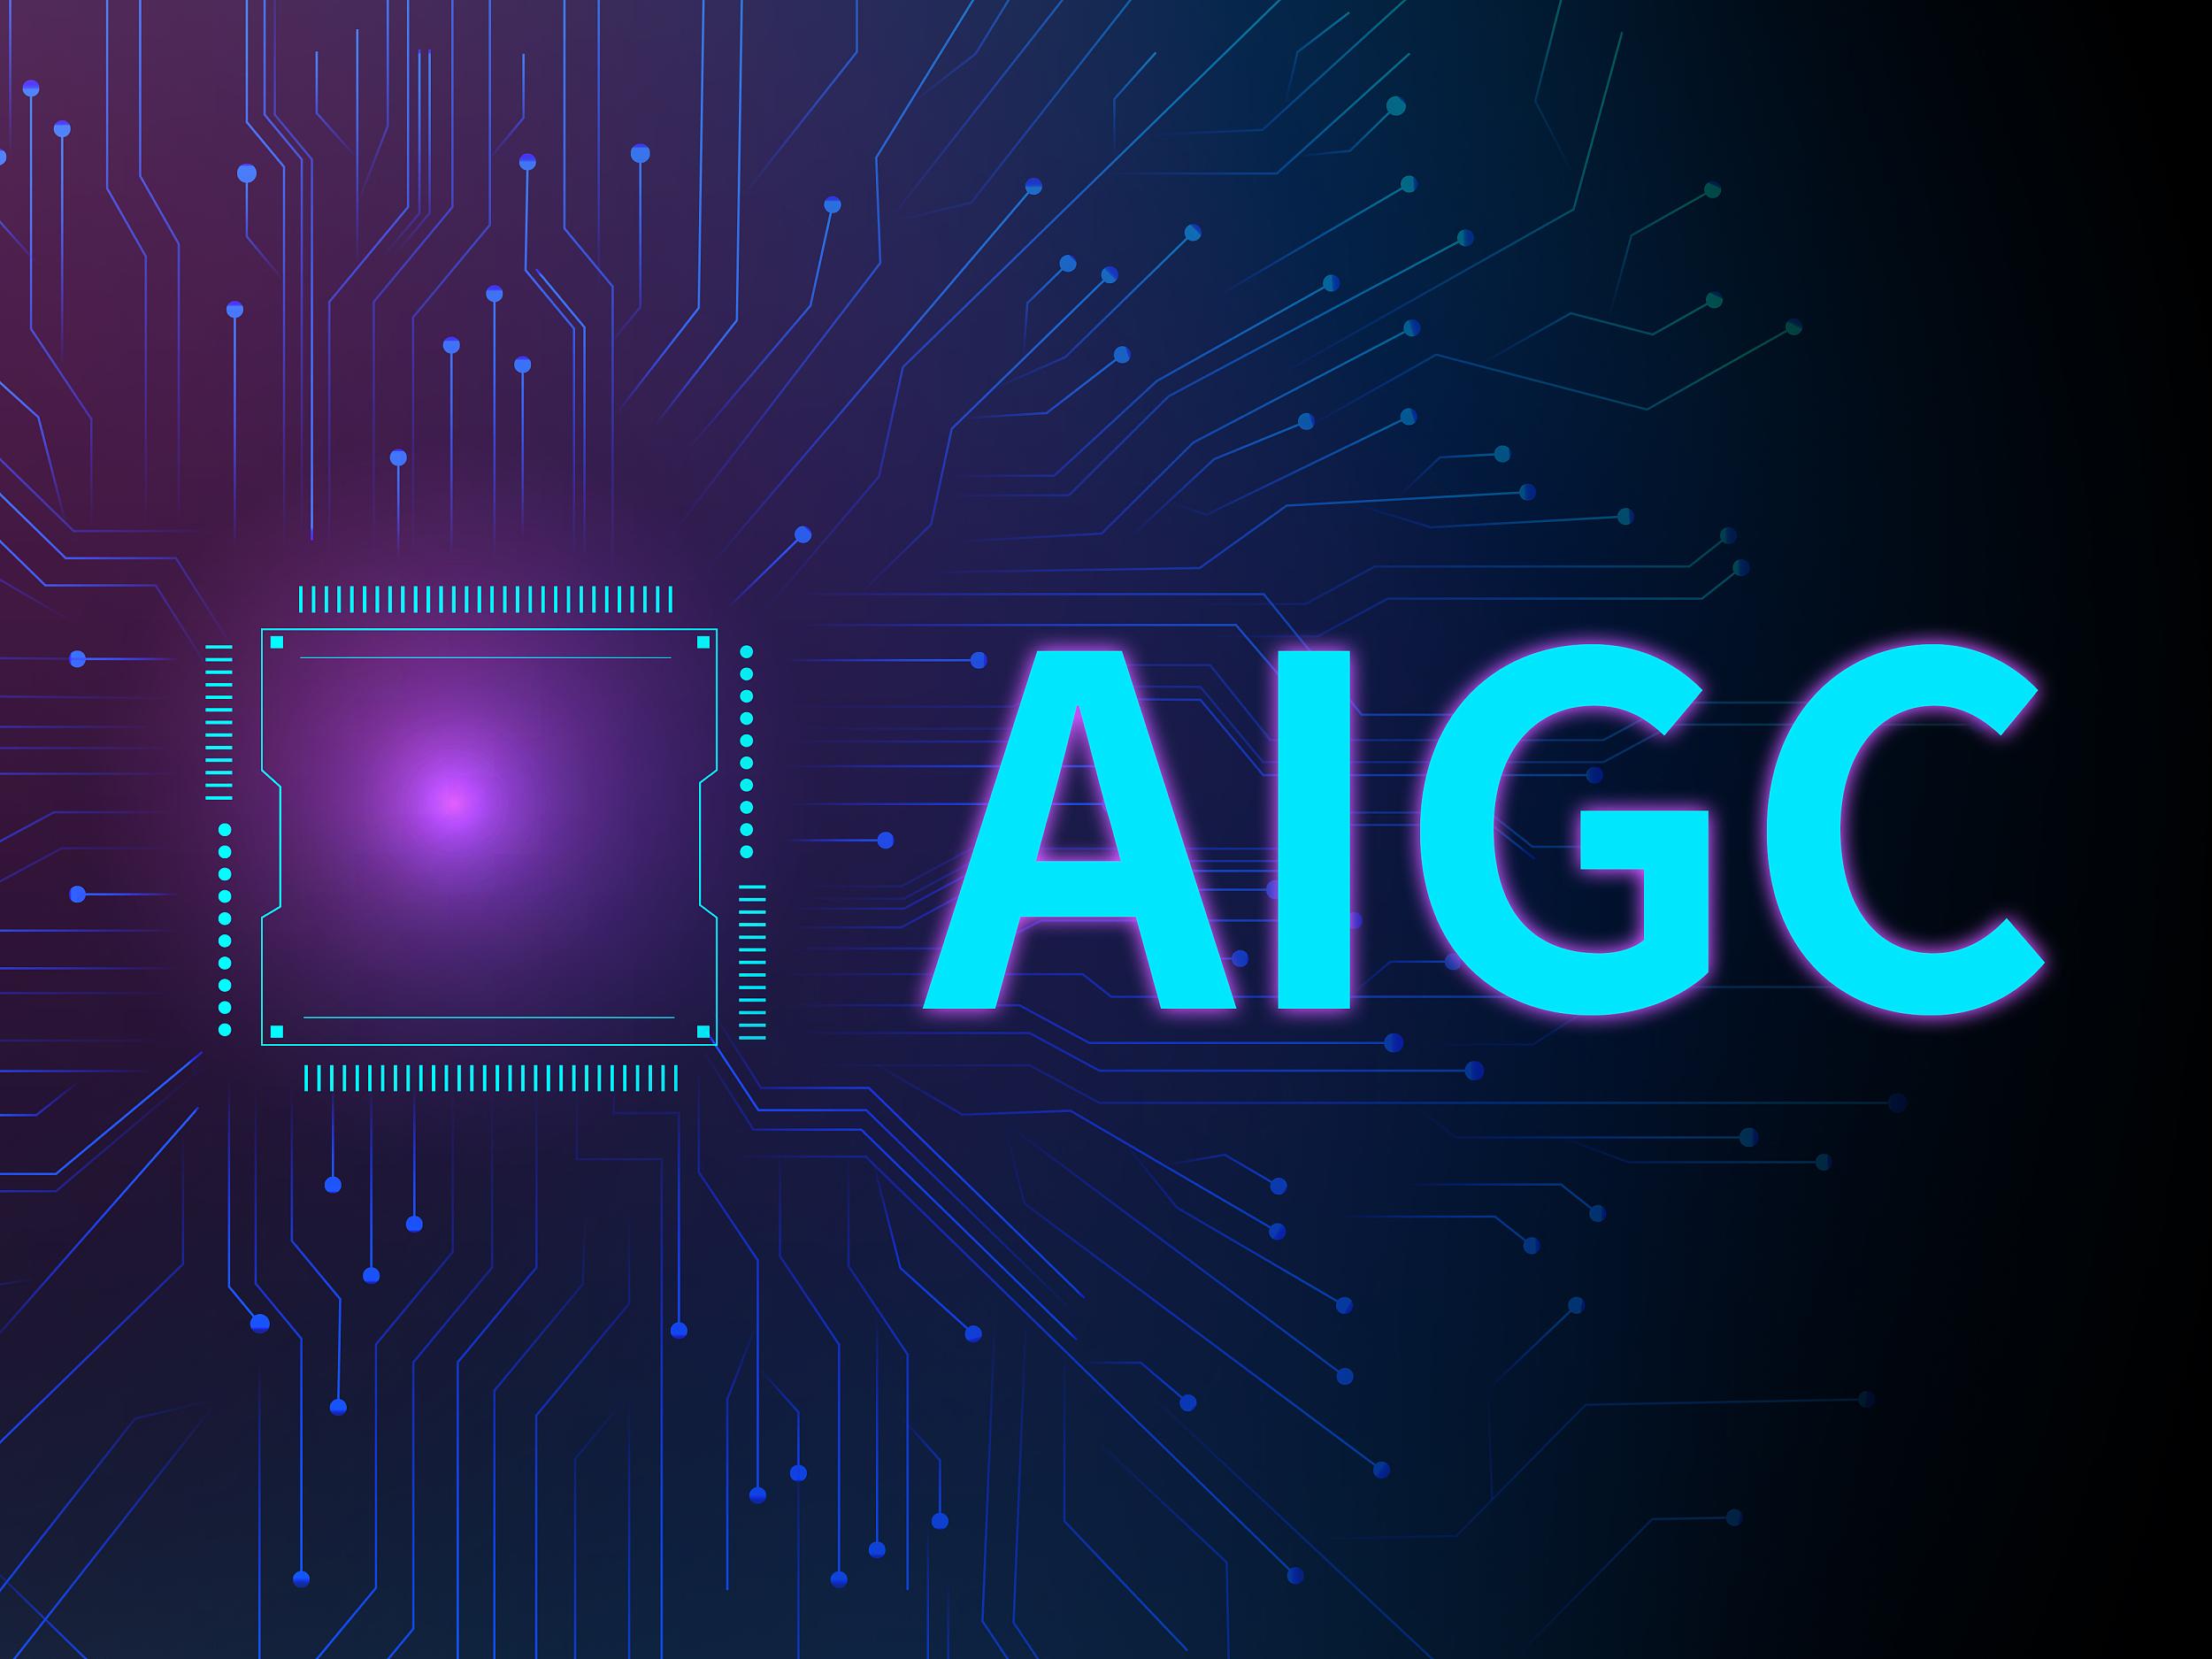 这是一张展示电子线路图背景与中心的“AIGC”字样的图片，字体发光，整体风格科技感十足，可能代表人工智能或计算机概念。